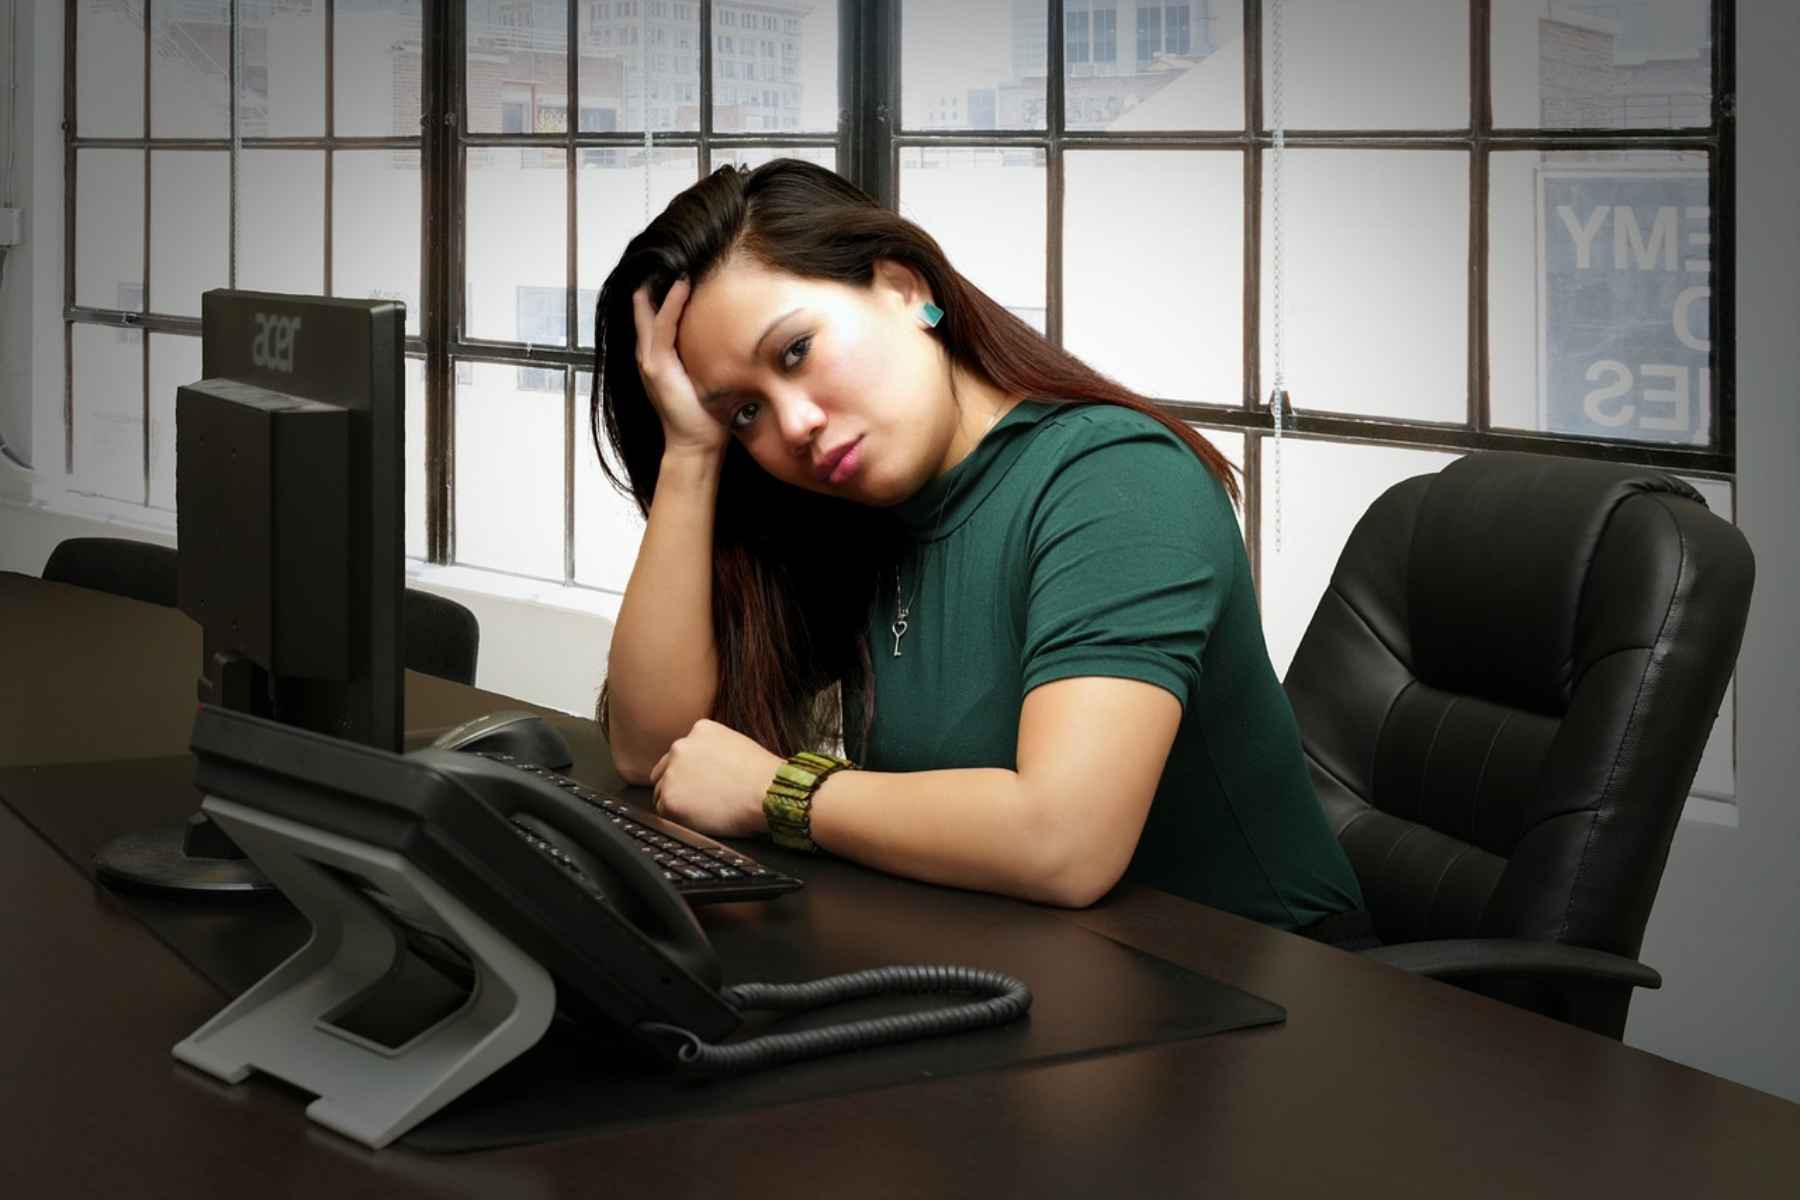 Στρες άγχος: Ποιες είναι οι 5 συνήθειες που εκτοξεύουν τα επίπεδα του άγχους;